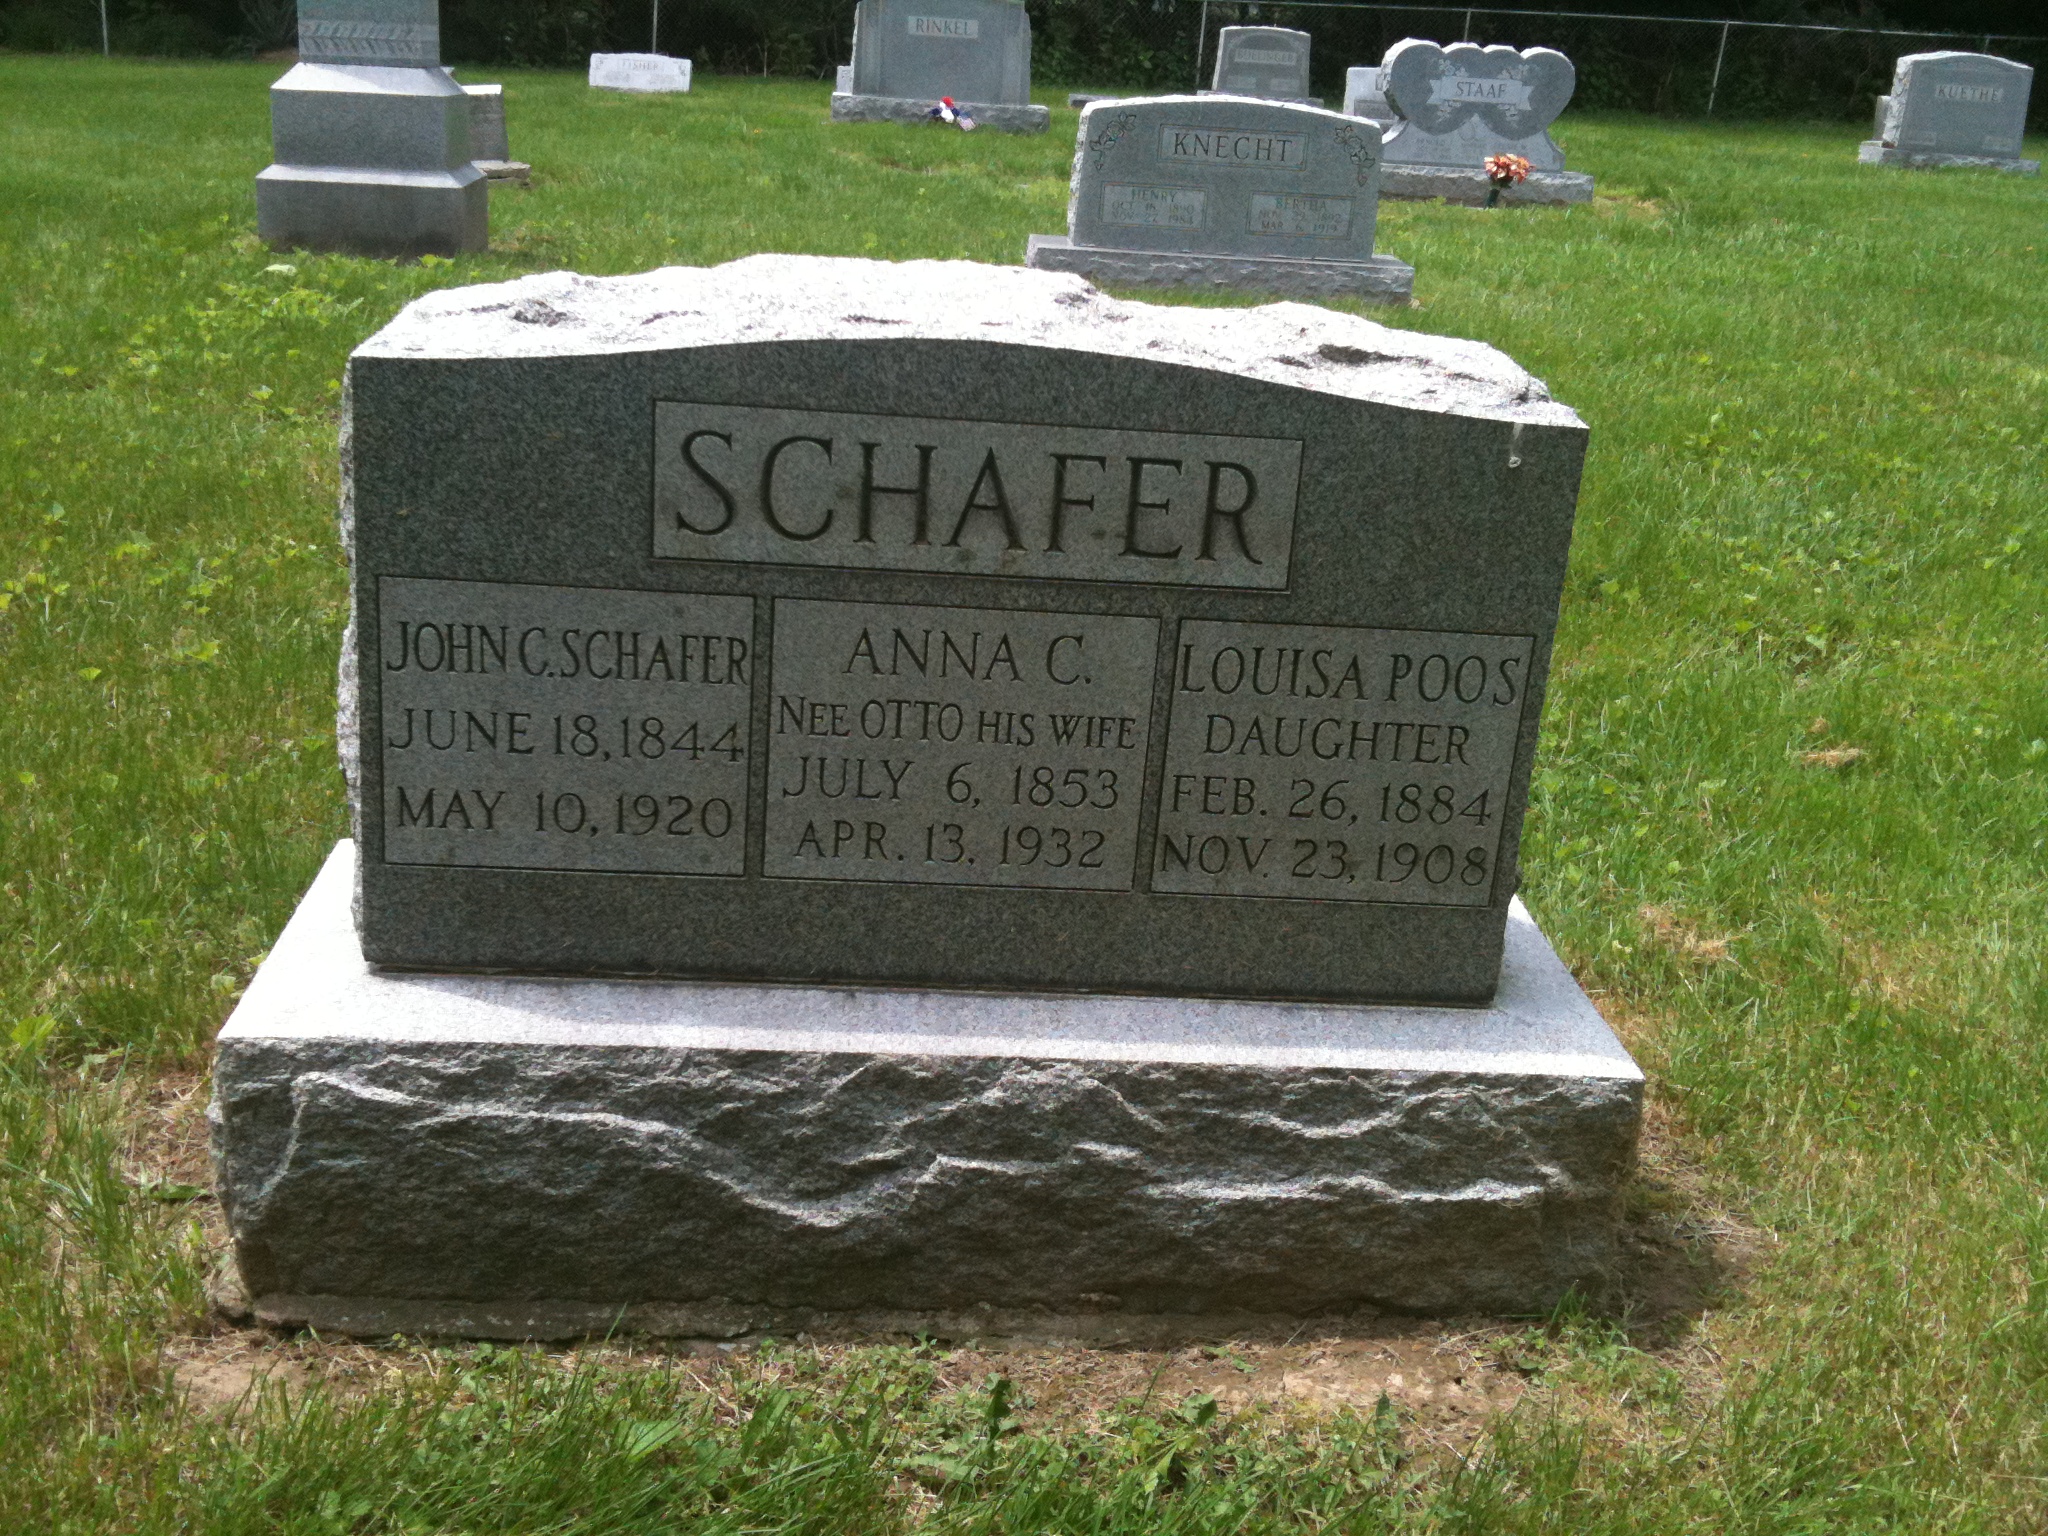 John C. Schafer, Anna C. Schafer nee Otto, and Louisa Poos nee SchaferHeadstone